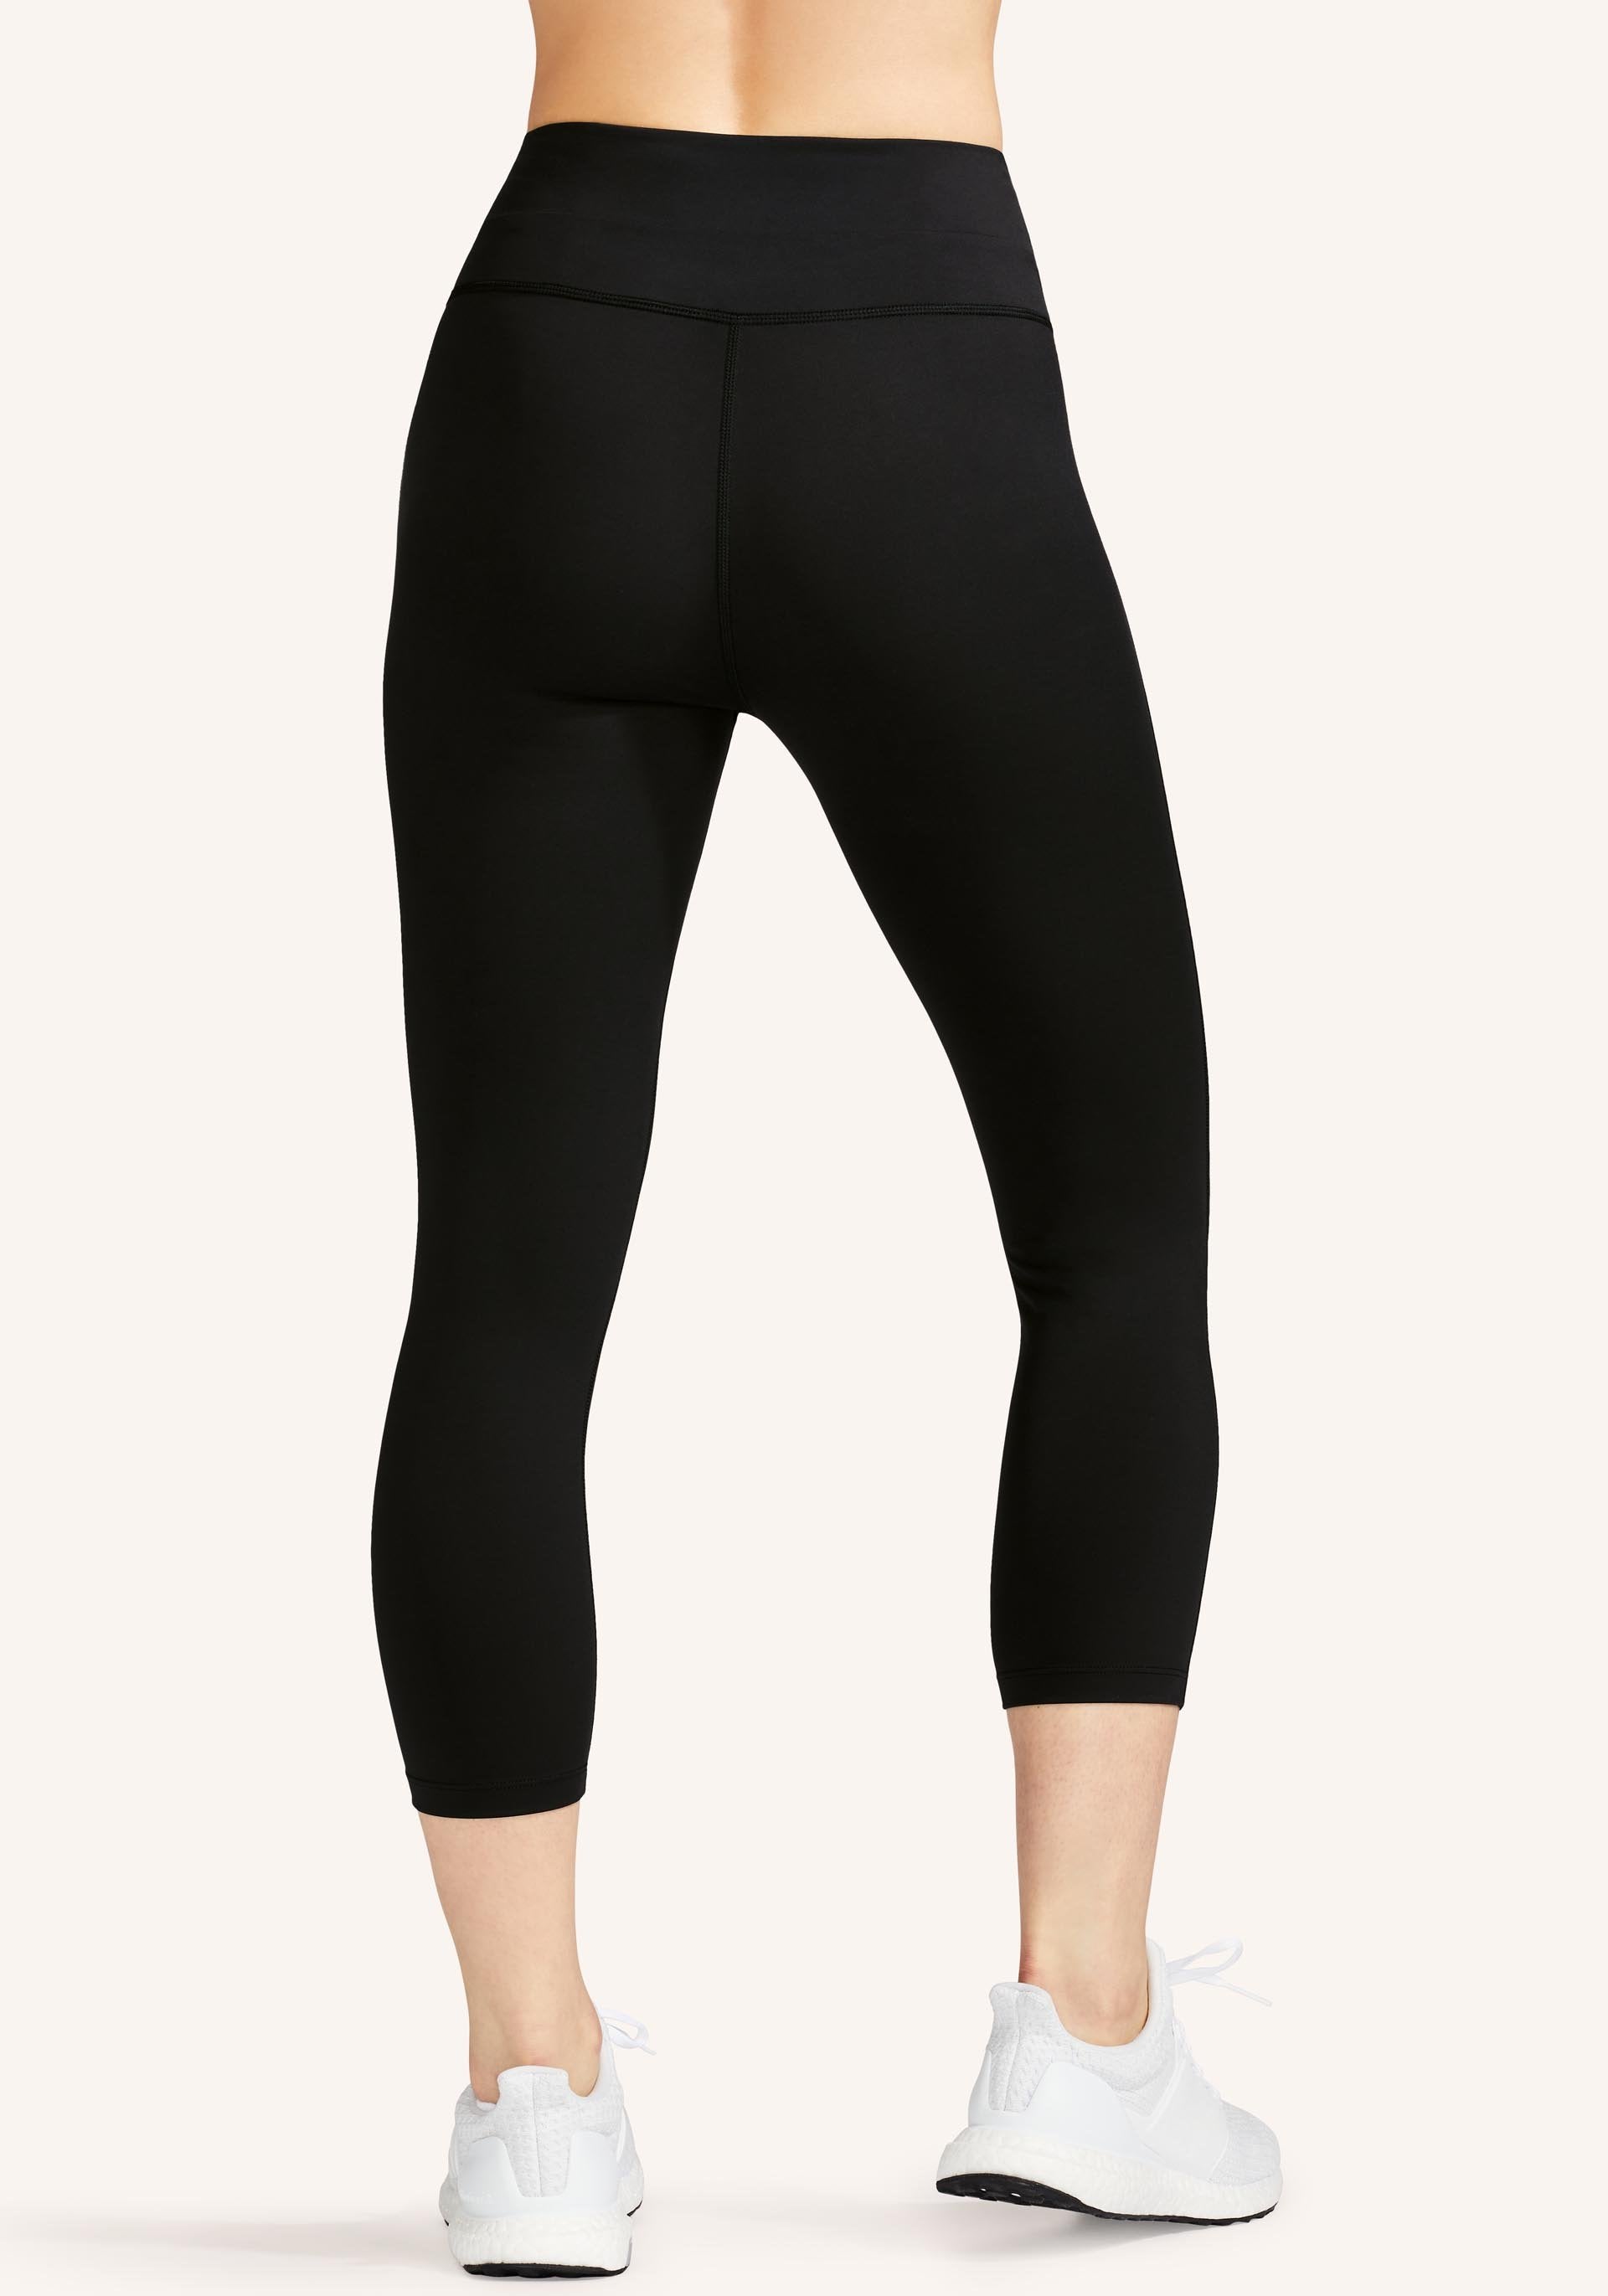 Xersion Workout Legging / Capri Black Size XS - $19 (36% Off